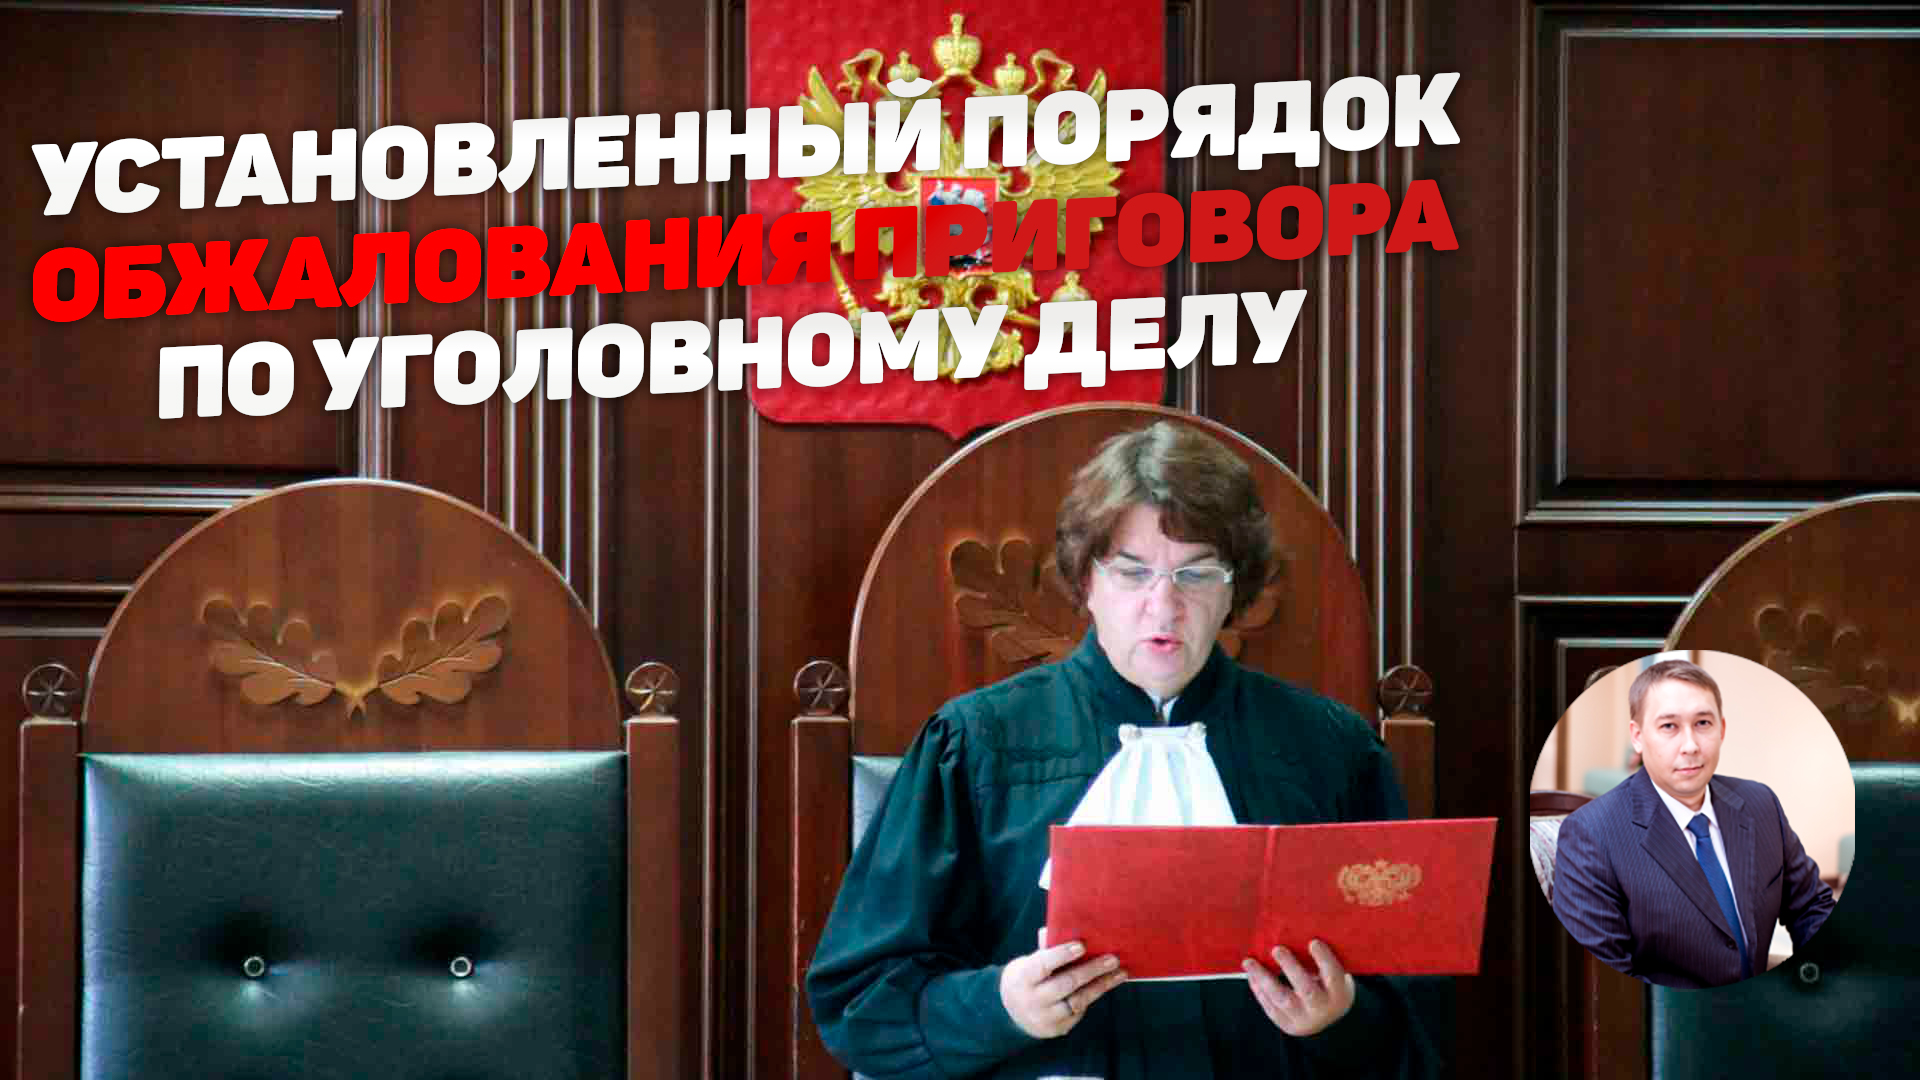 Адвоката исключили. Судья Попов первый кассационный суд.